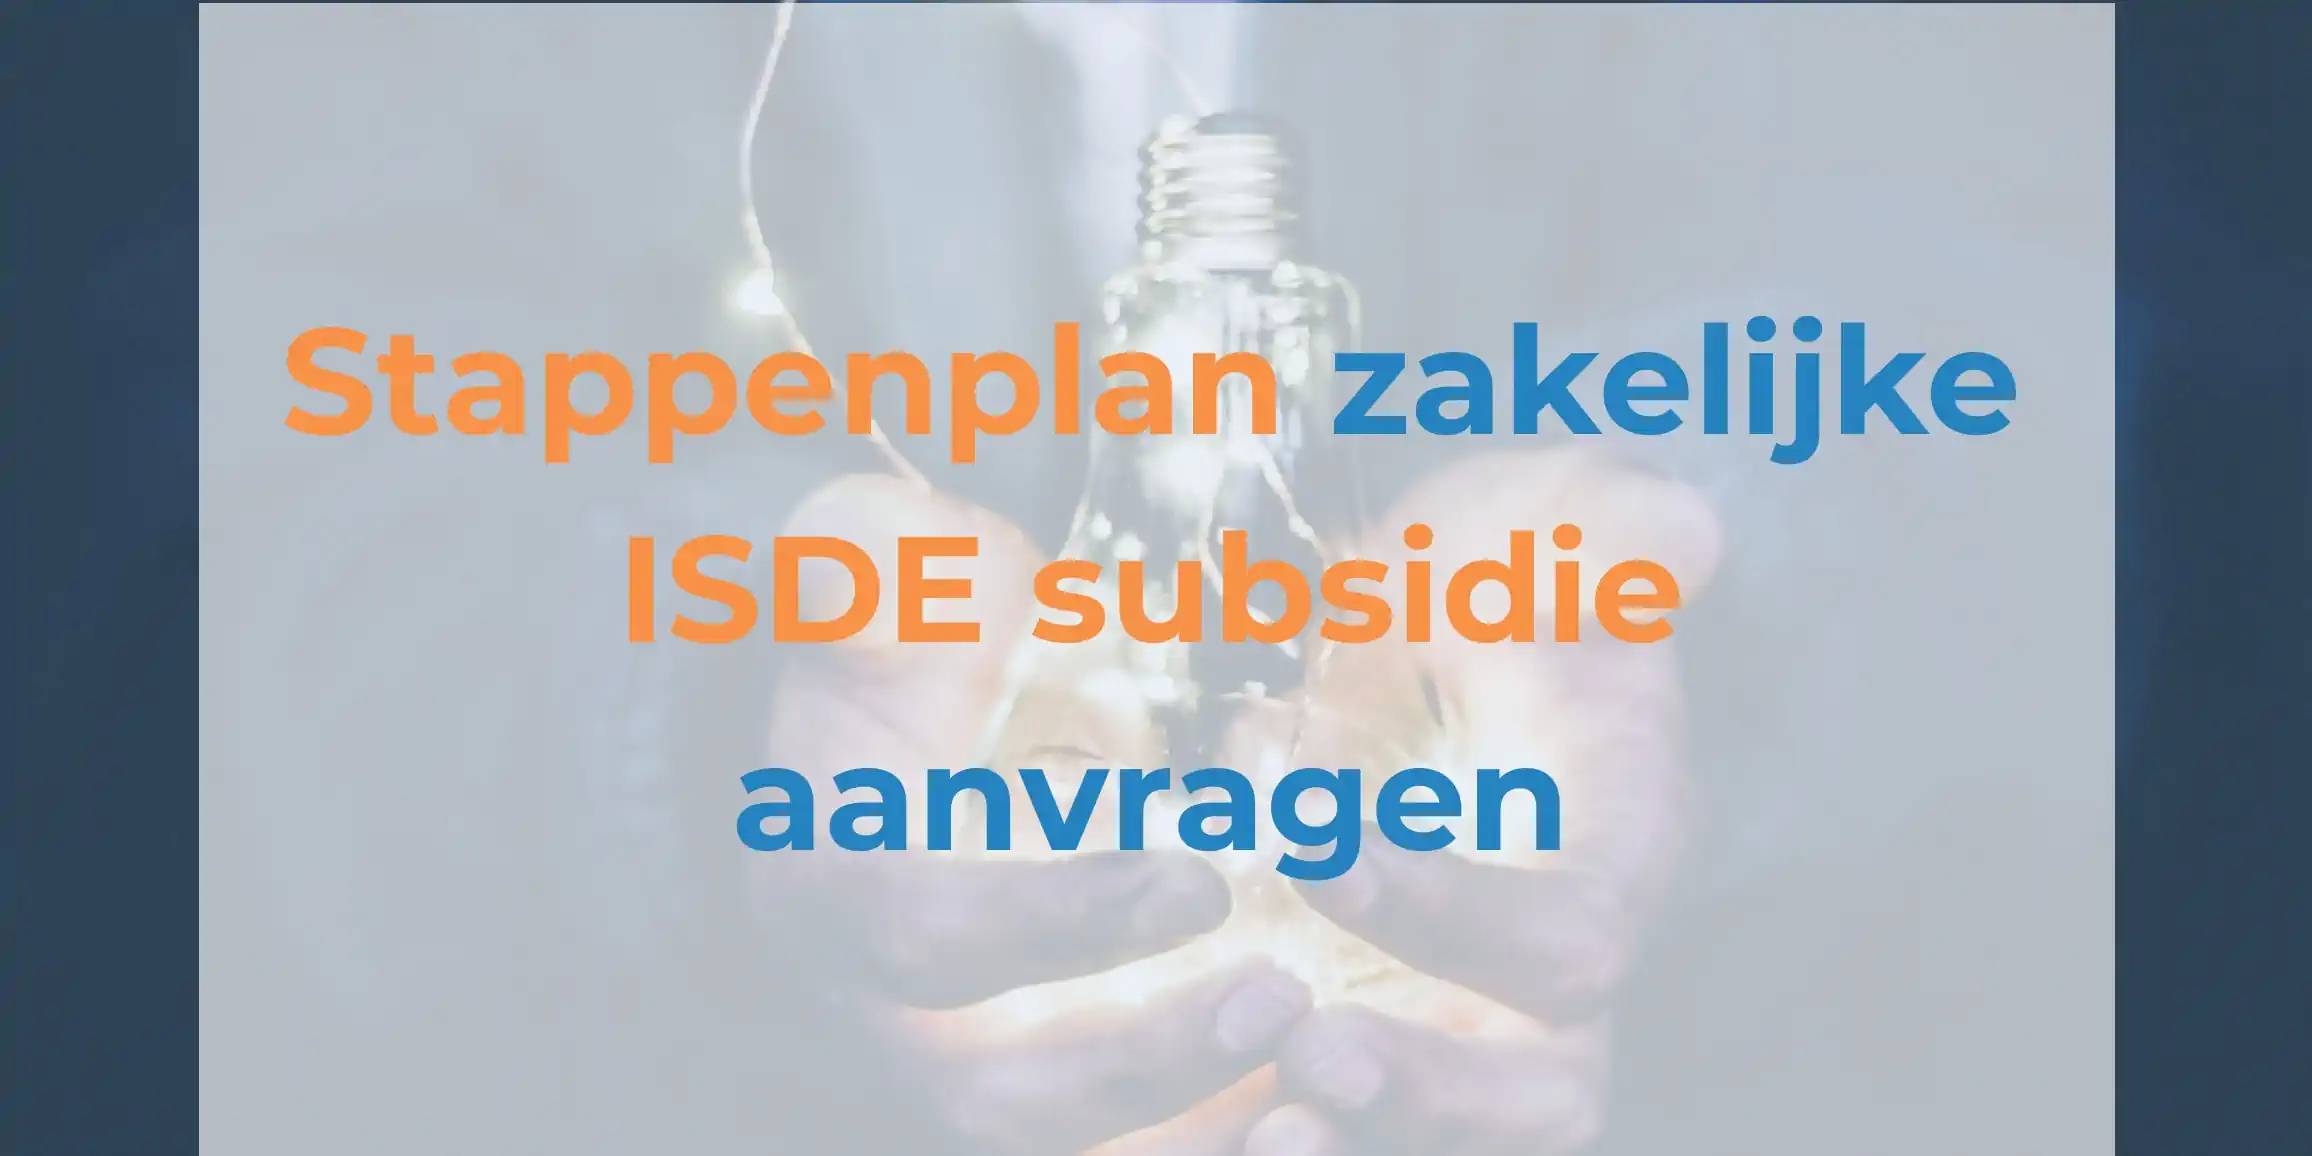 Stappenplan zakelijke ISDE subsidie aanvragen